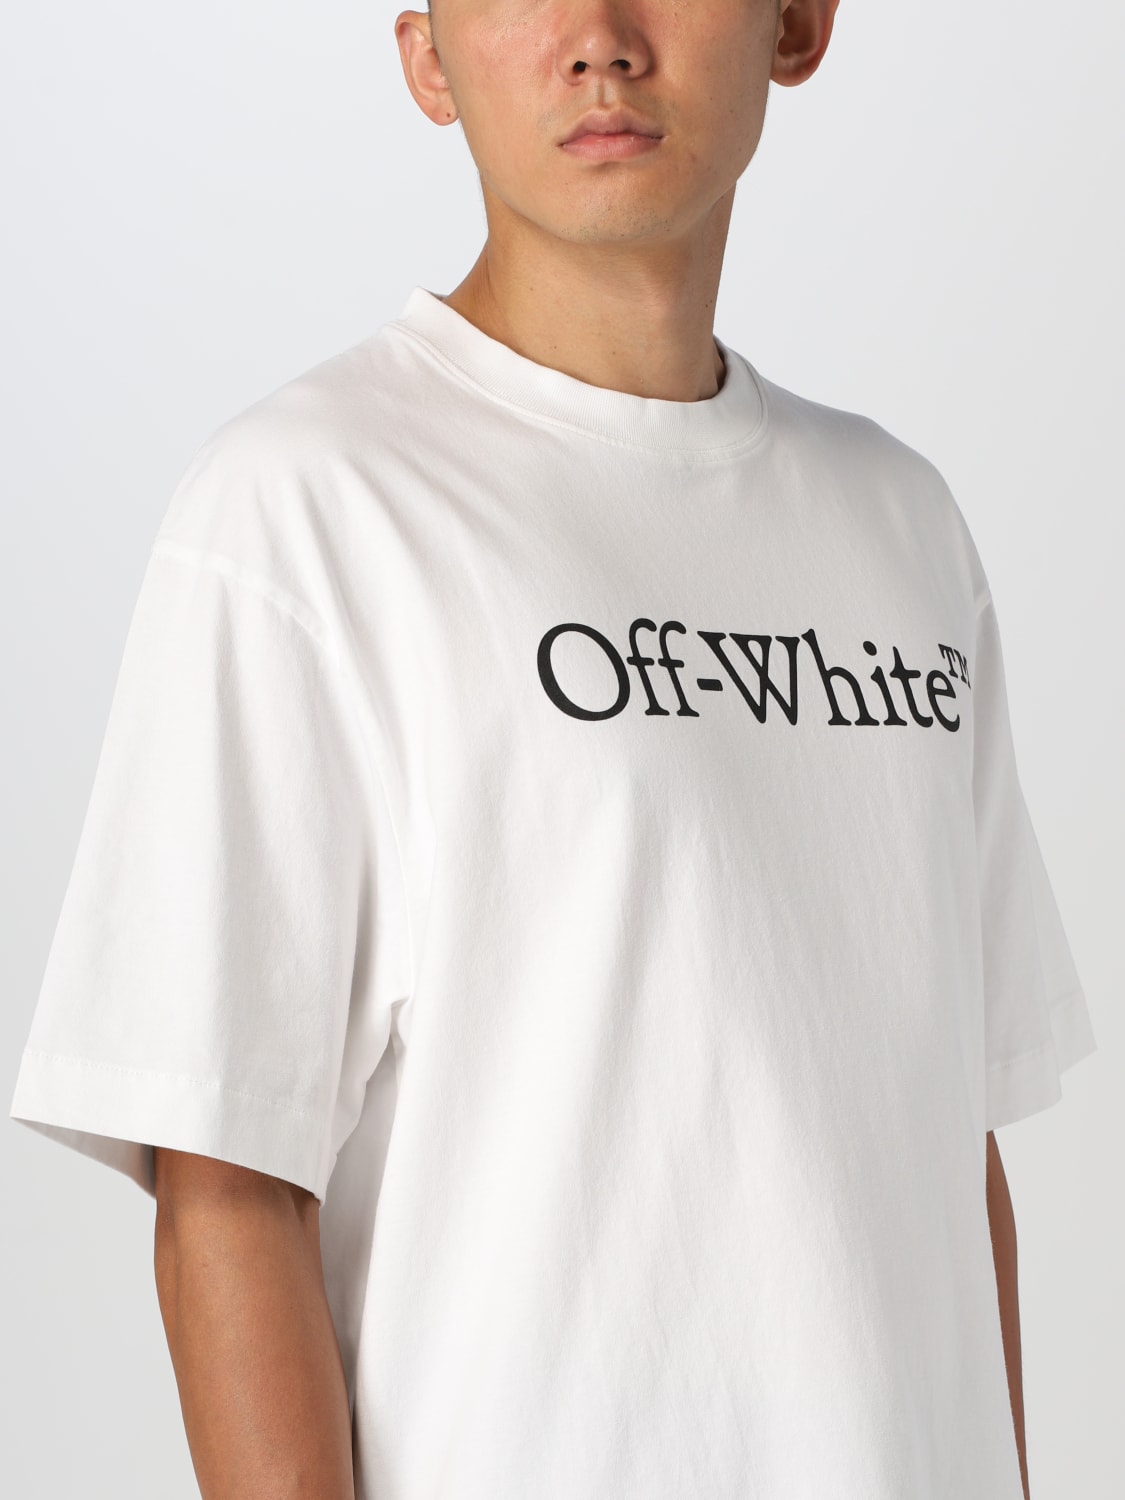 Off White Tシャツ